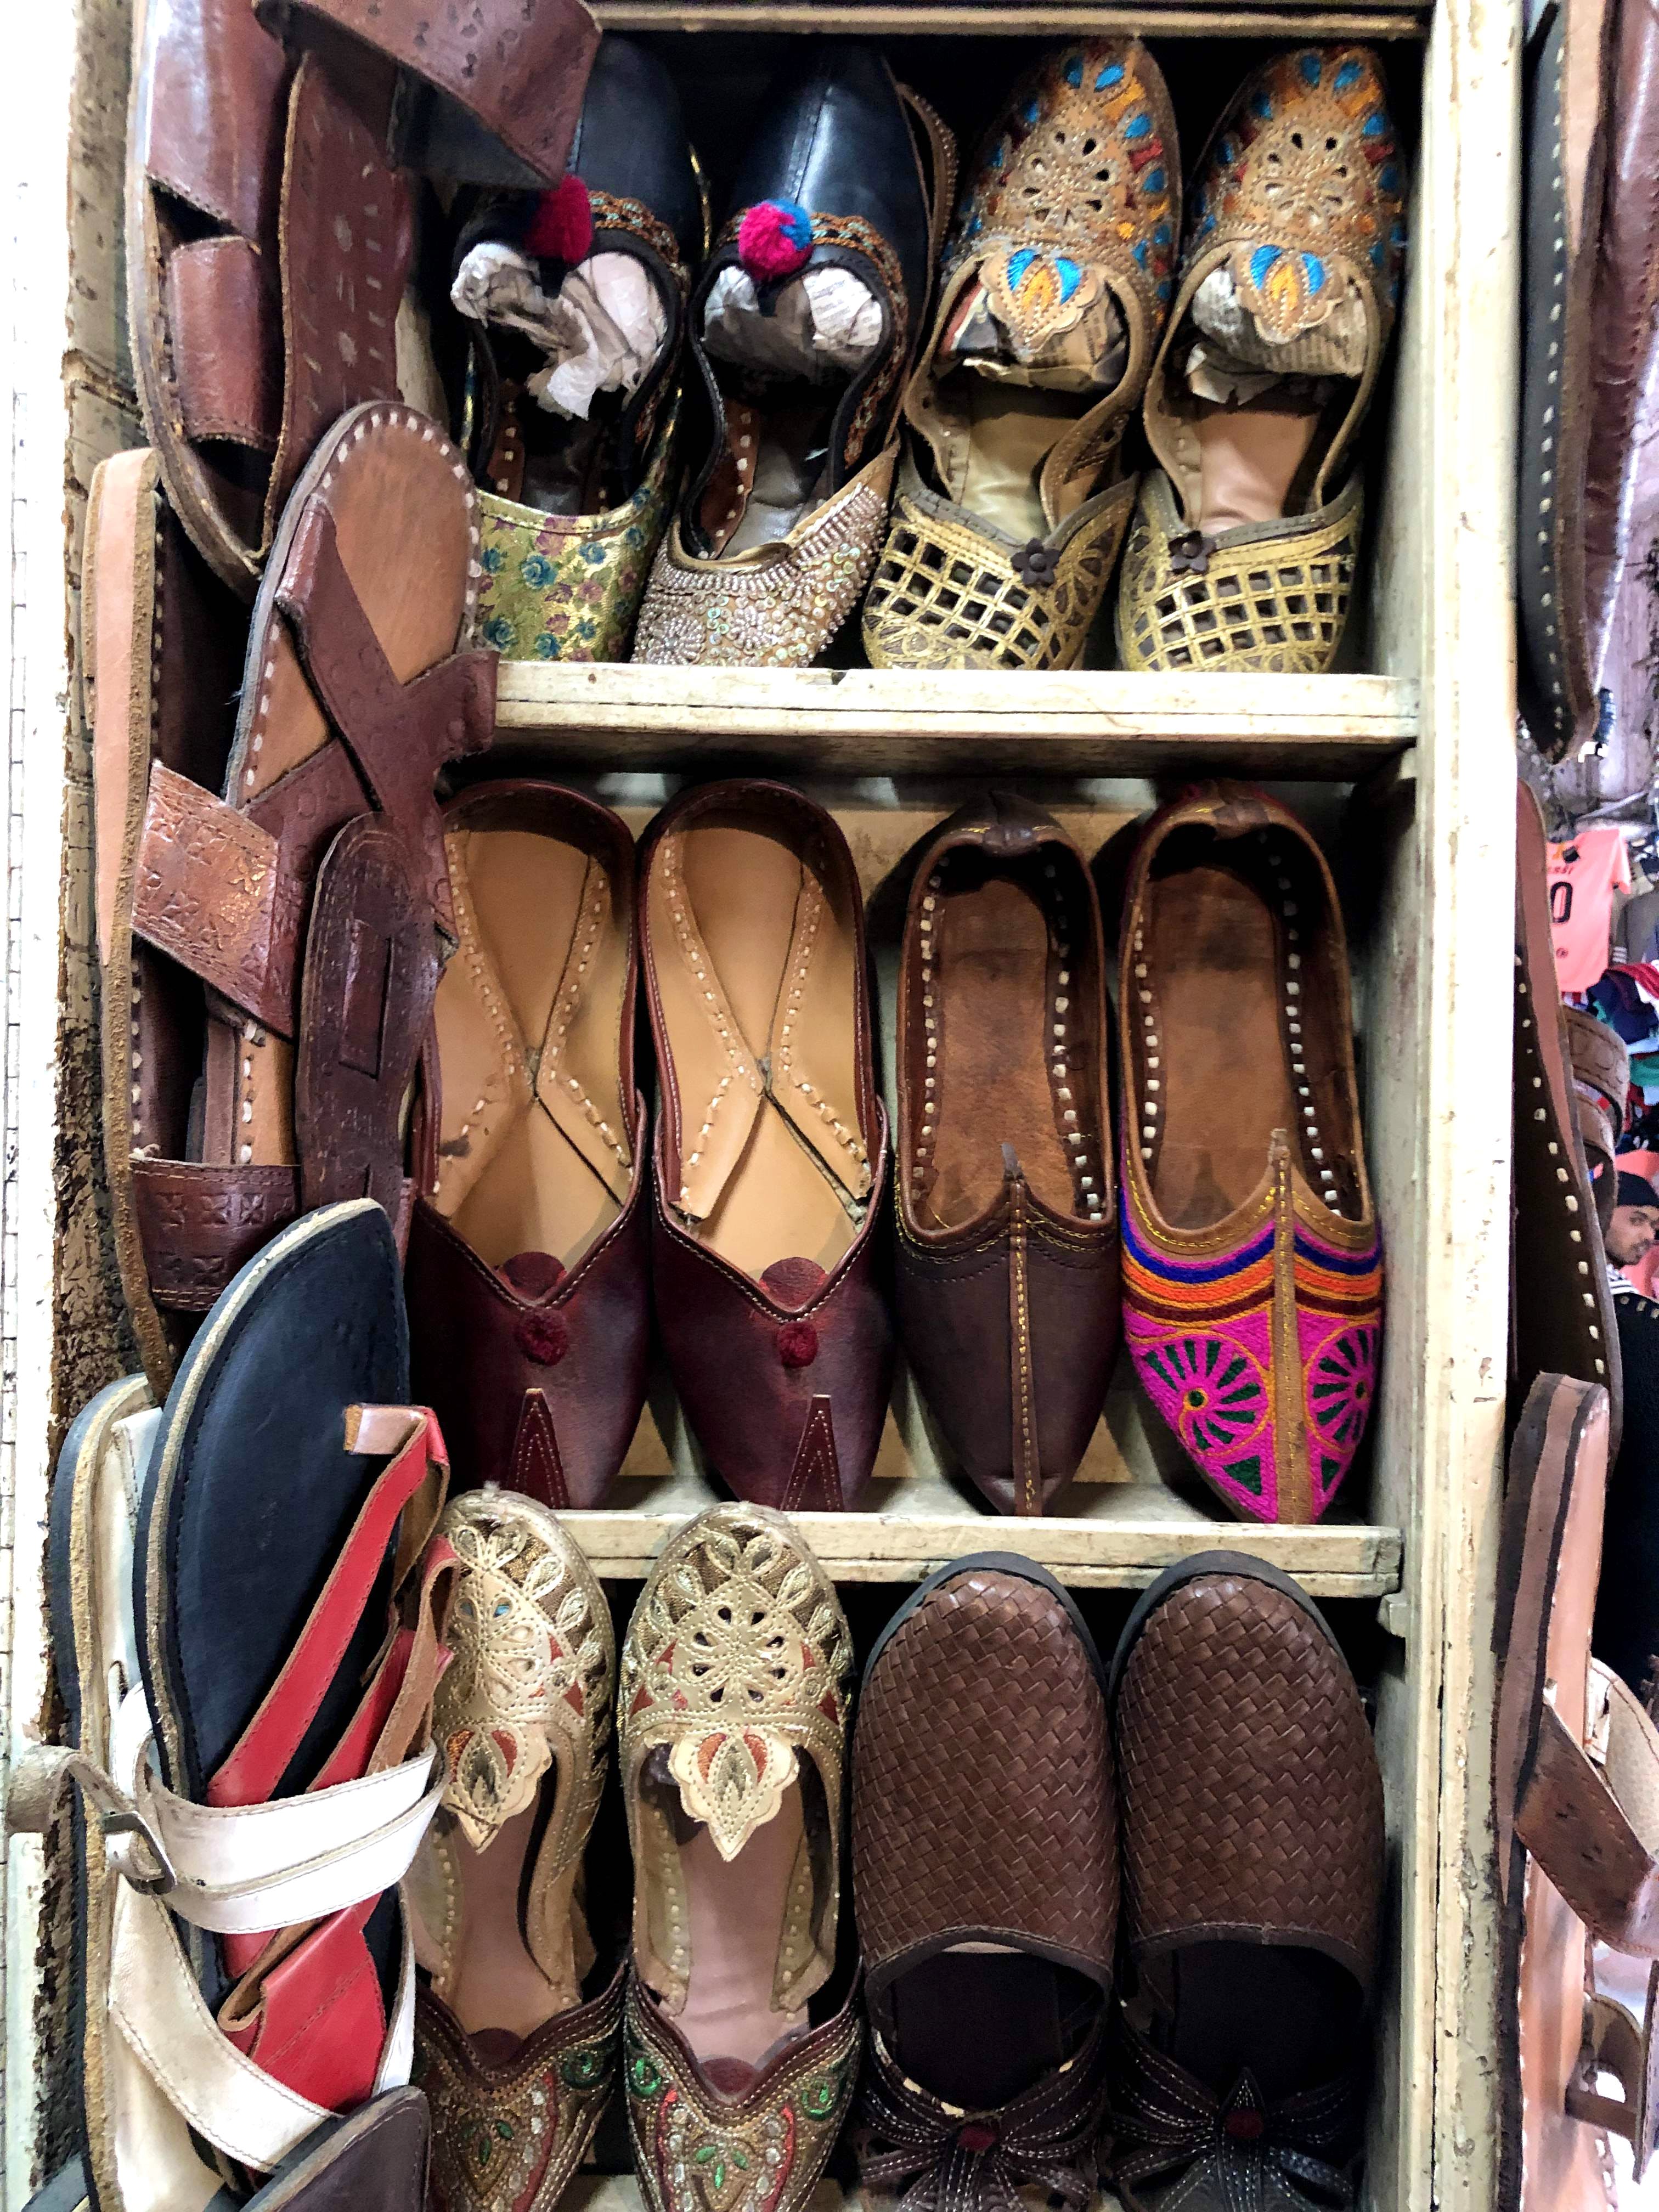 Footwear,Shoe,Closet,Room,Wardrobe,Bazaar,Retail,Boutique